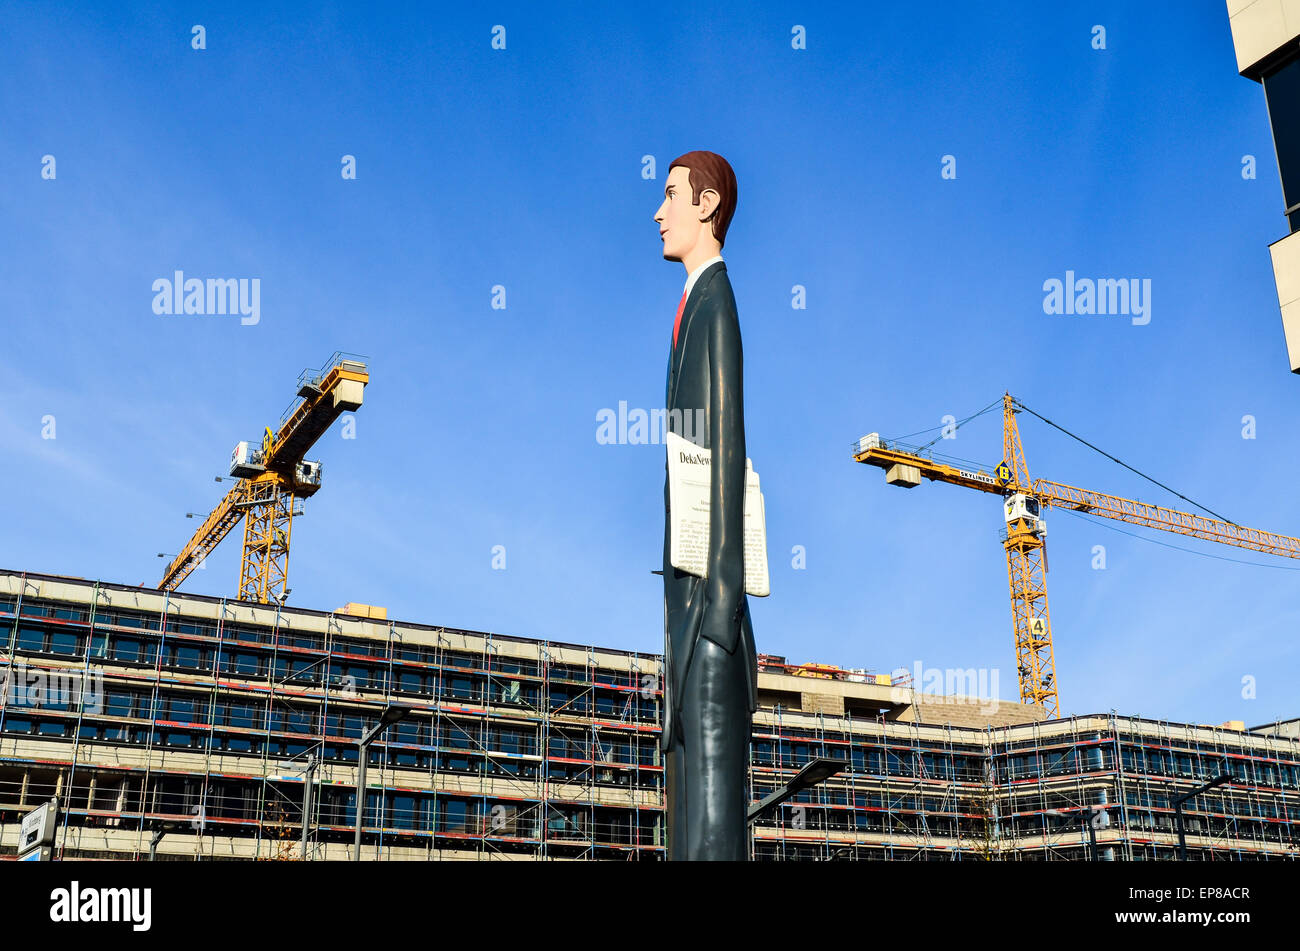 Estatua de la "Altura" del banquero en Kirchberg, la ciudad de Luxemburgo, y grúas de construcción en el fondo Foto de stock